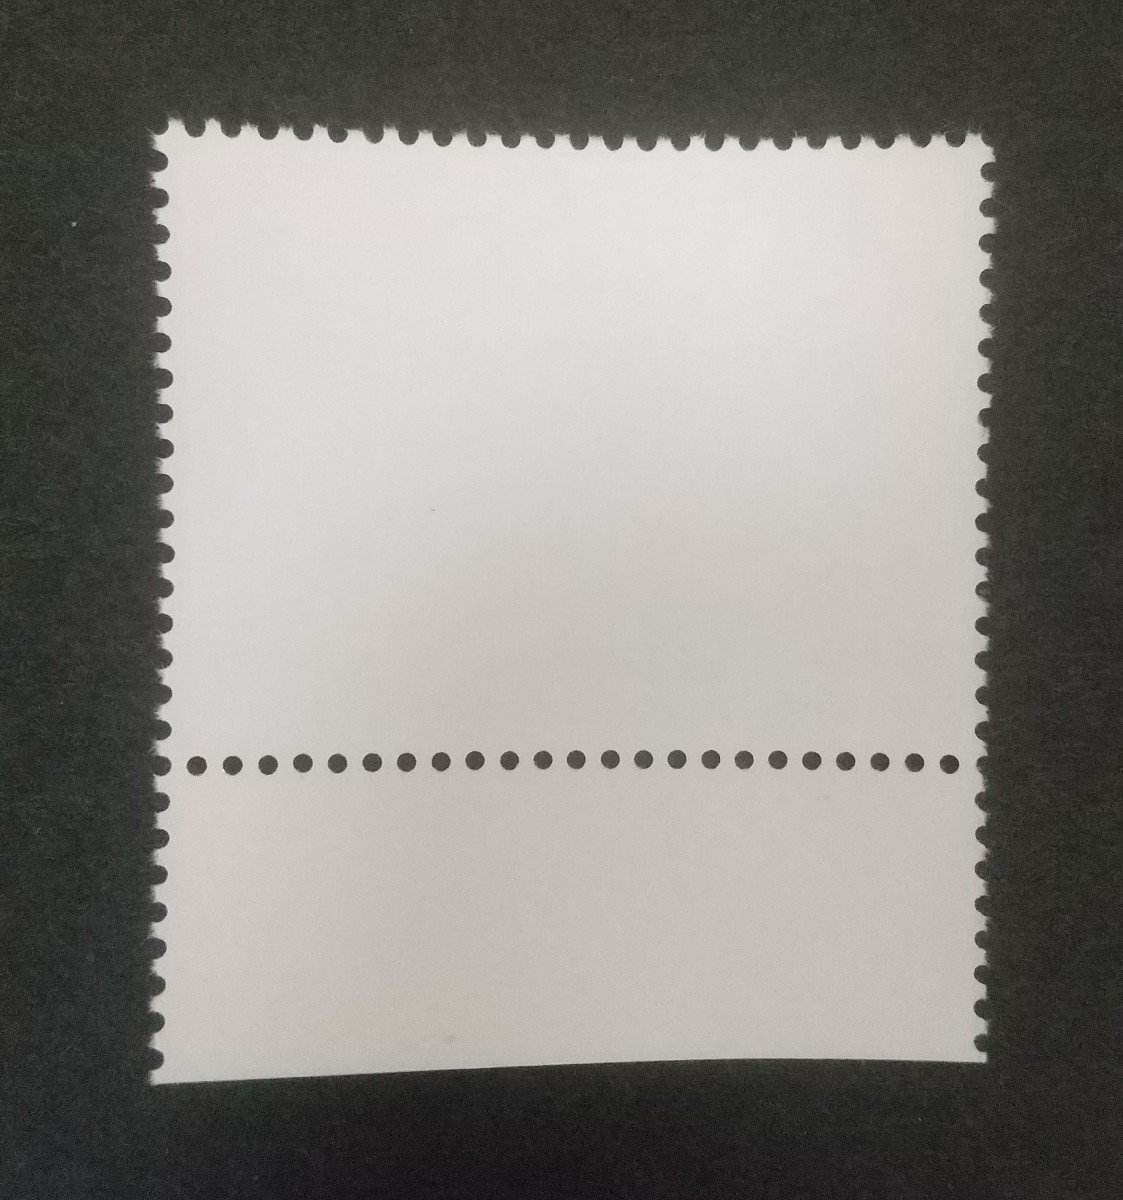 記念切手 第22回国際助産婦連盟学術大会記念 1990 大蔵省銘板付き 未使用品 (ST-10)の画像2